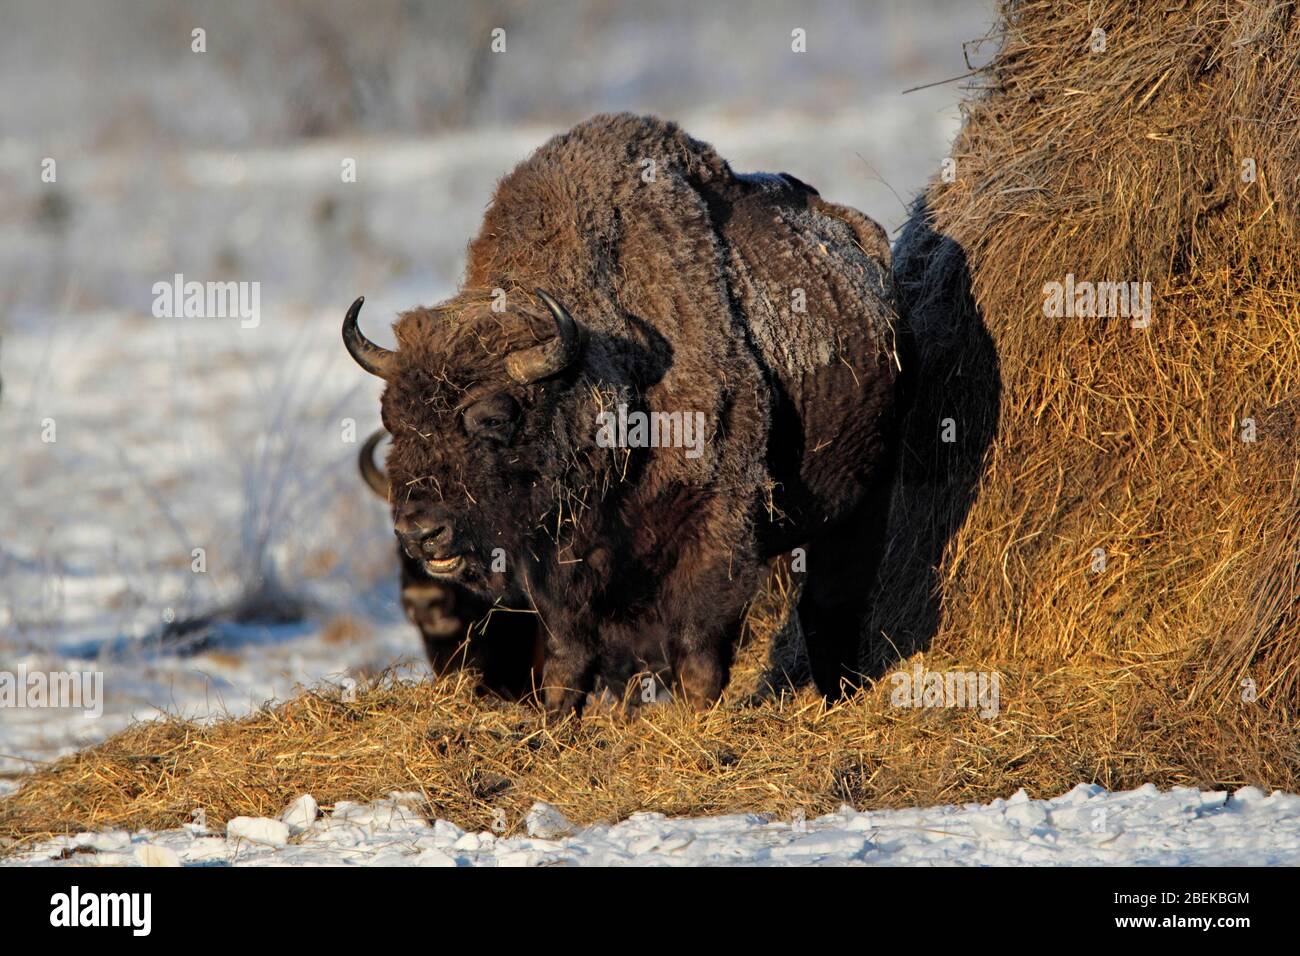 EUROPEAN BISON (Bison bonasus) at a feeding site, Bialowieza, Poland. Stock Photo